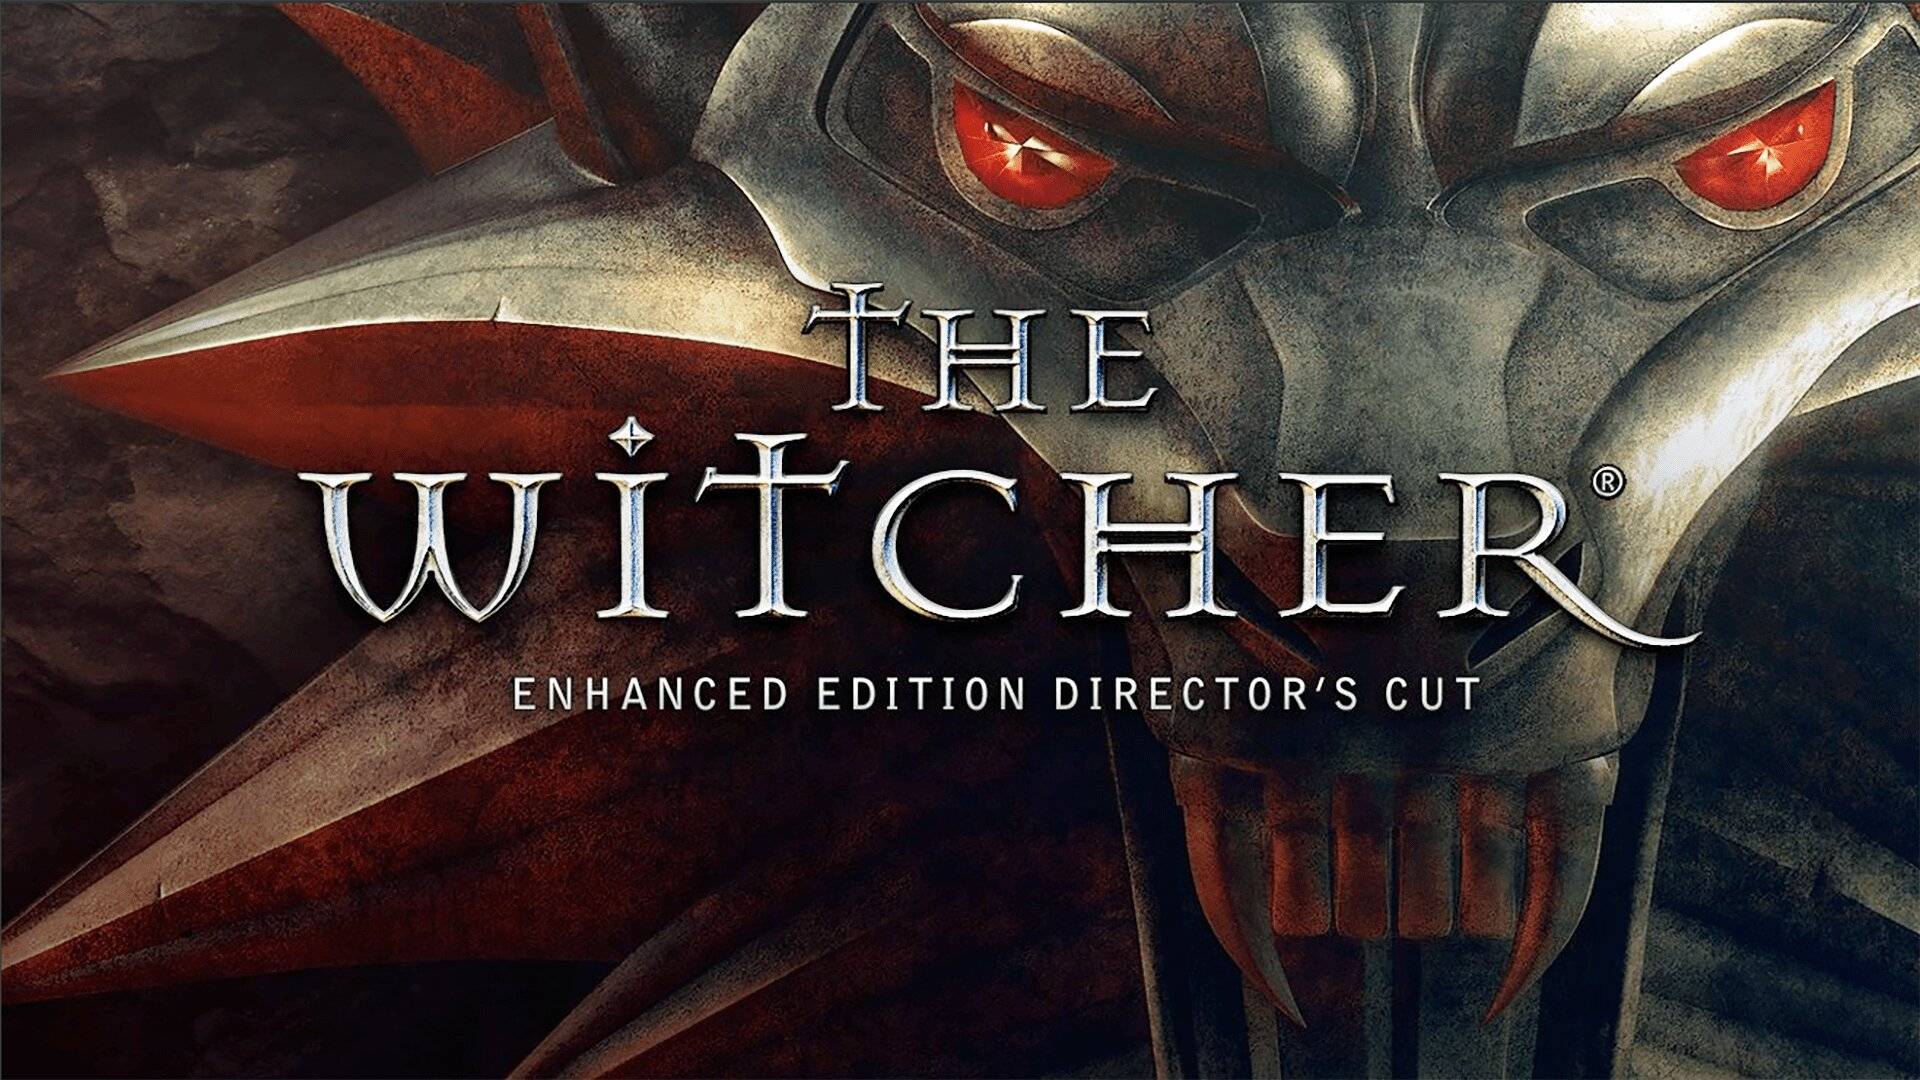 Выполняем квесты, ищем дурь ▣ The Witcher Enhanced Edition Director's Cut #7